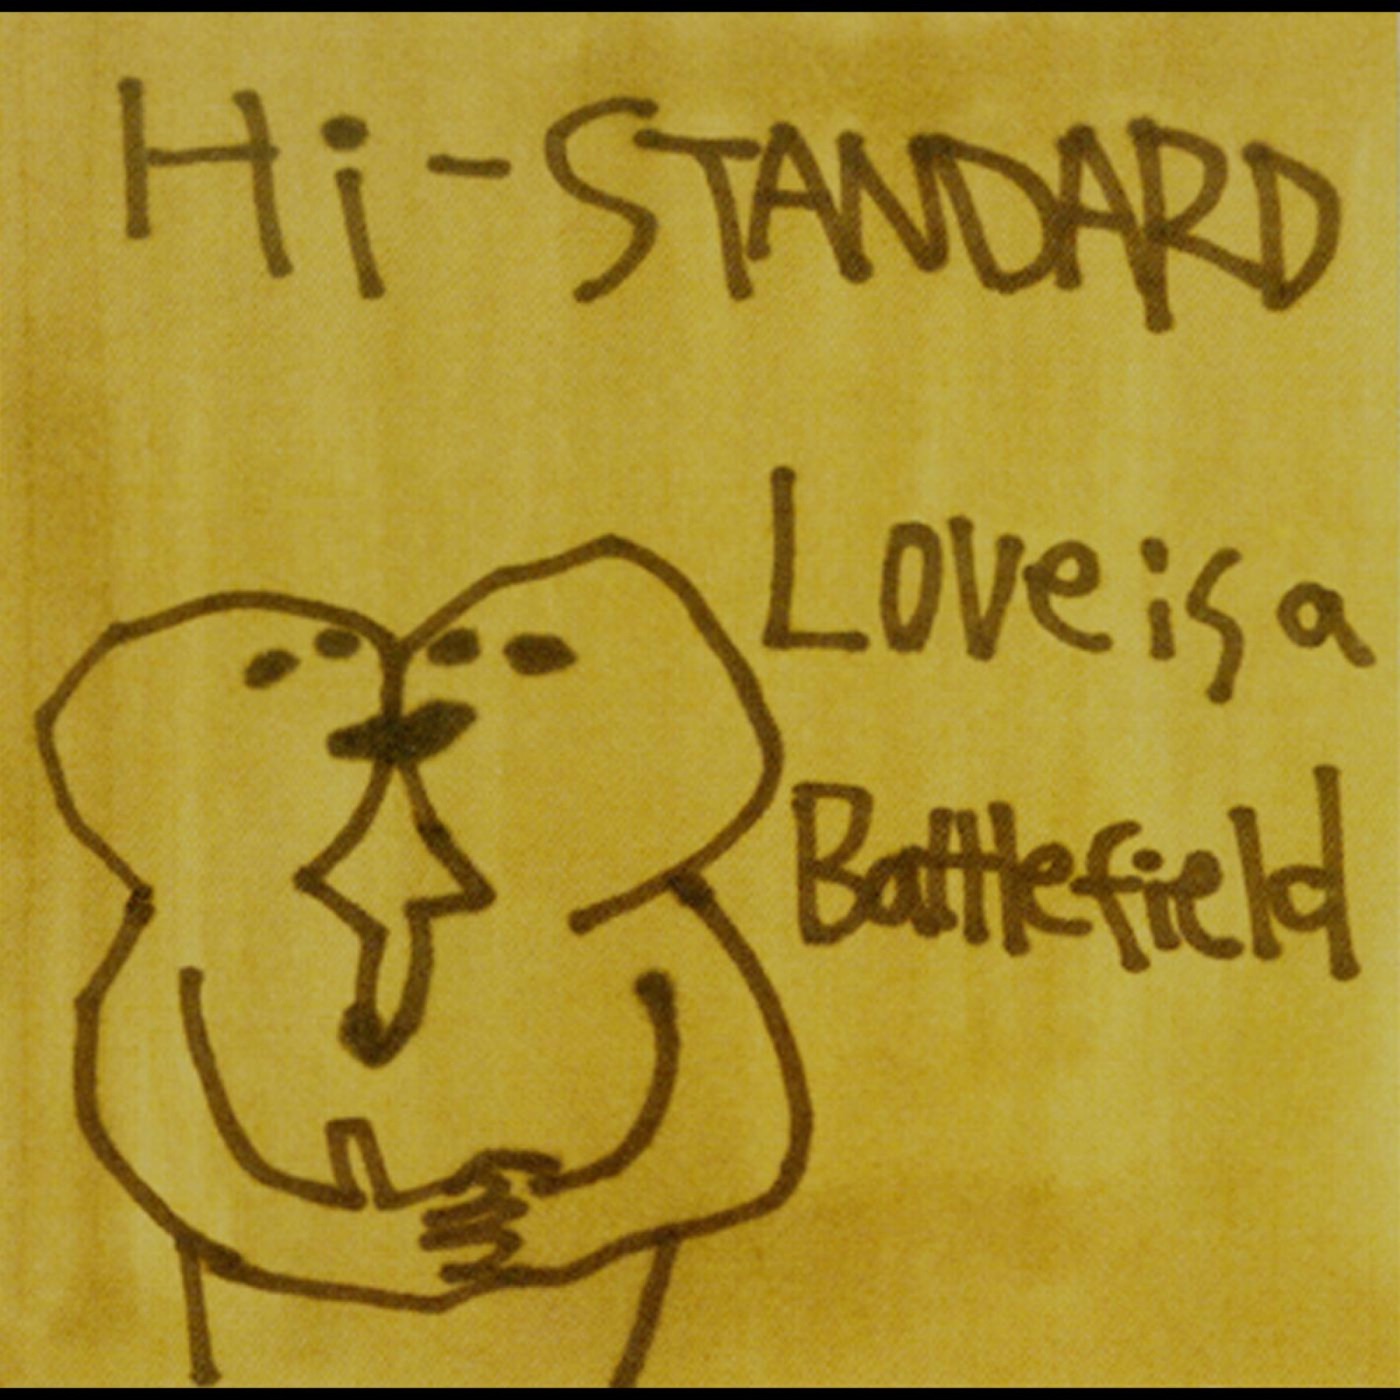 LOVE IS A BATTLEFIELD by Hi-STANDARD